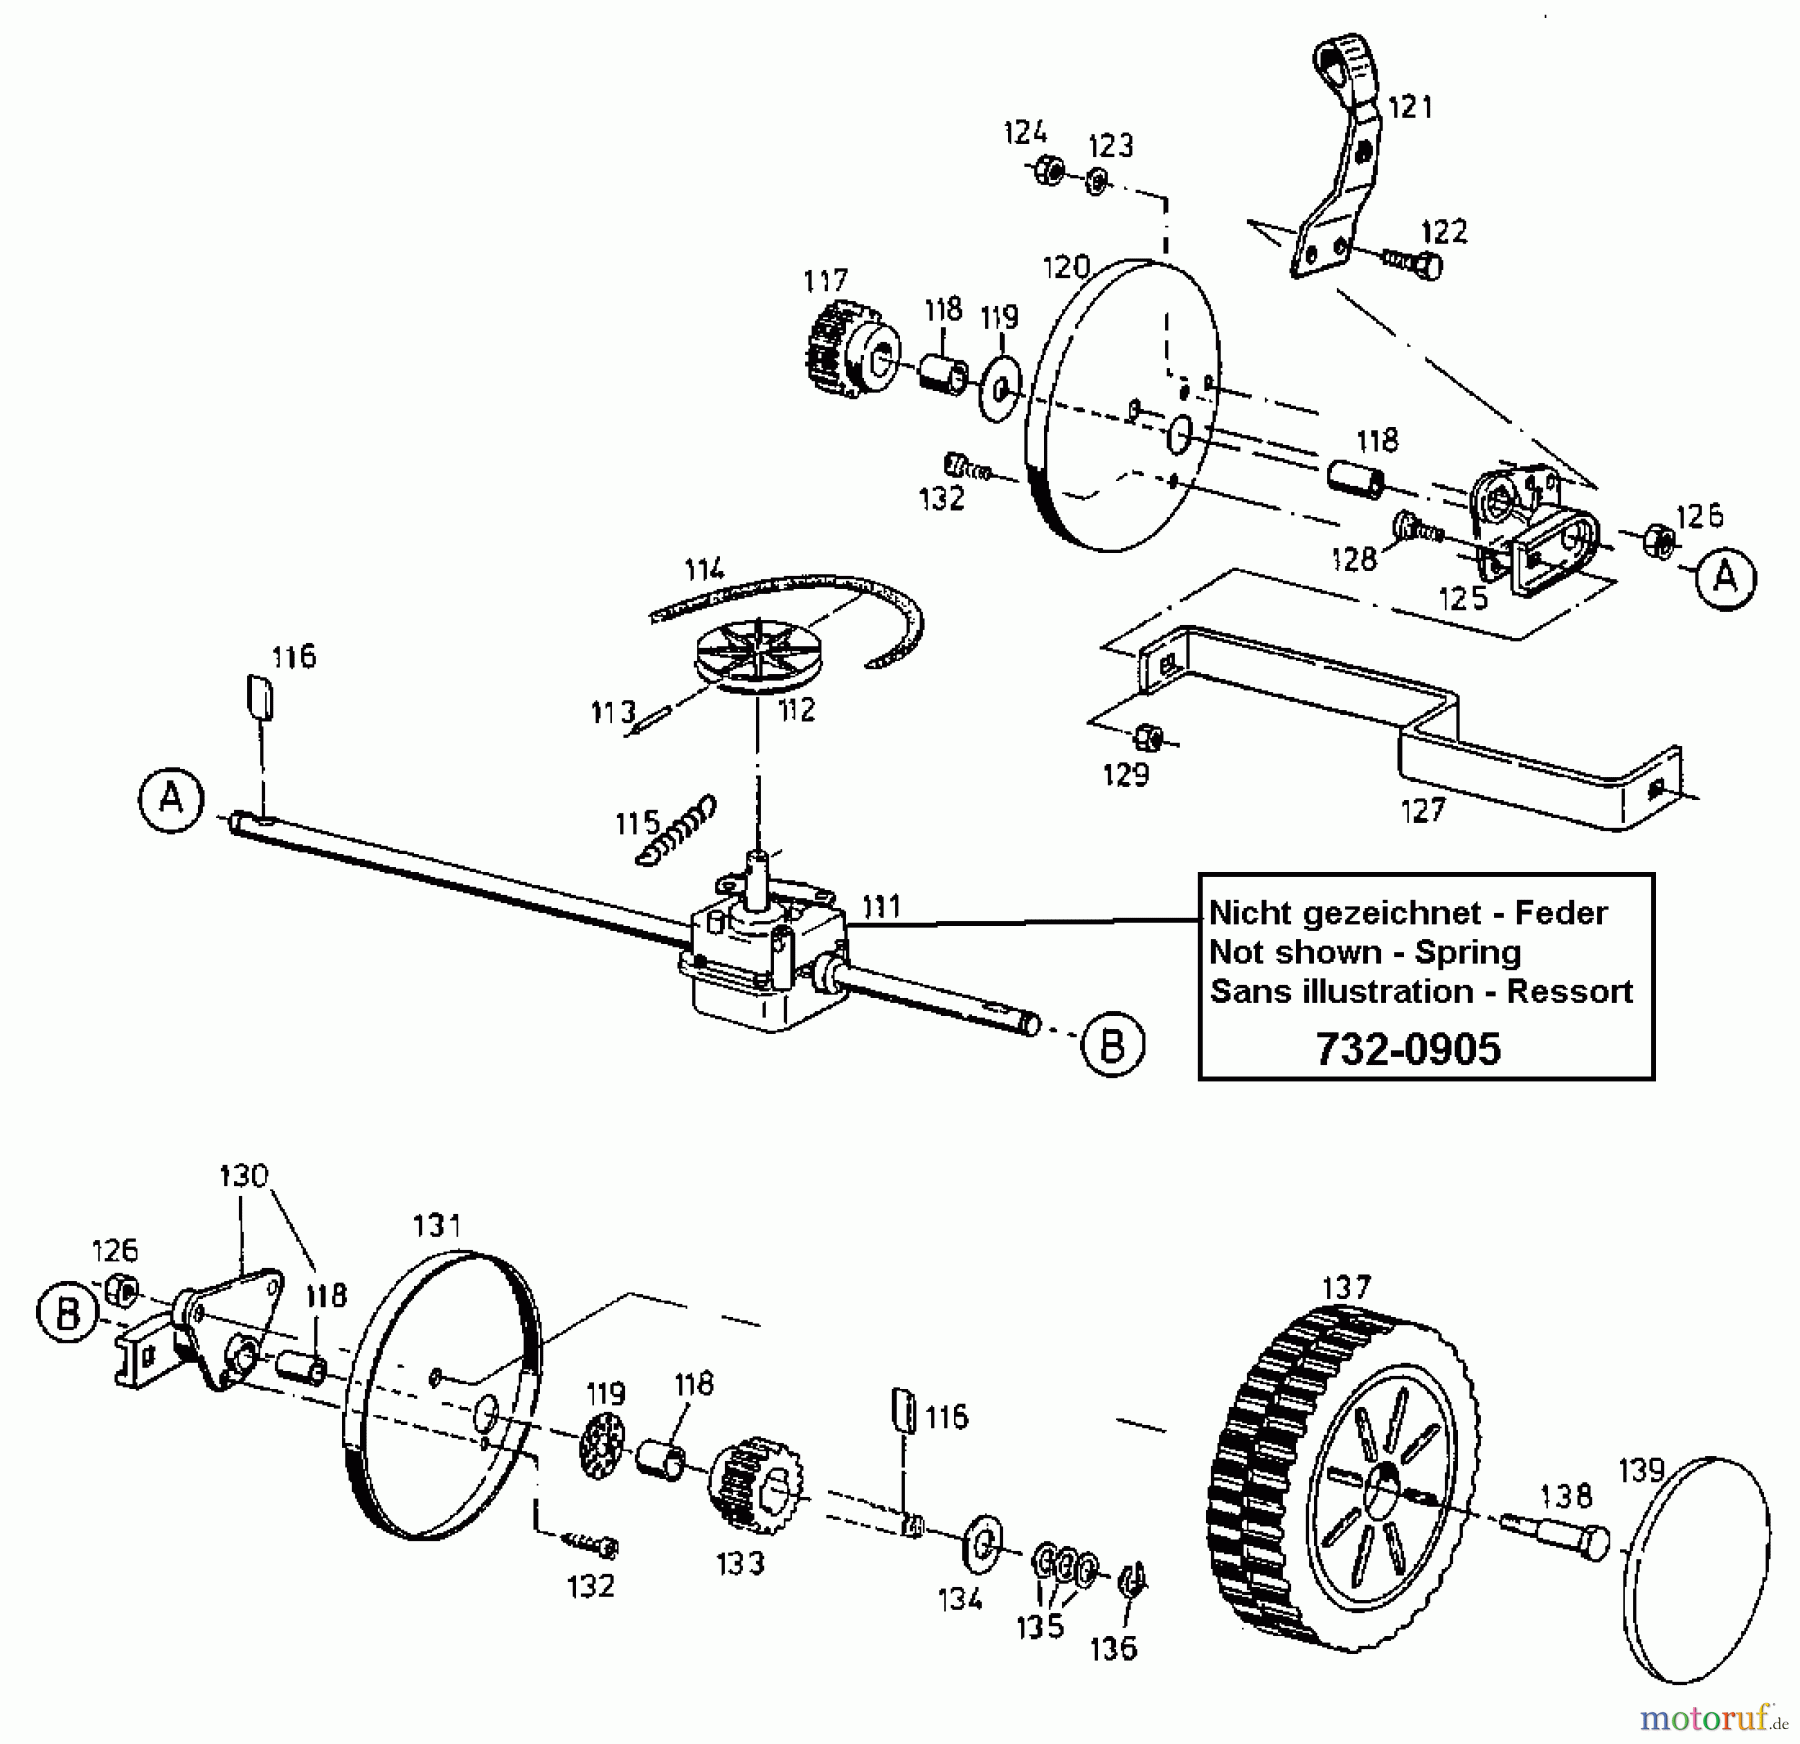  Gutbrod Petrol mower self propelled HB 48 RE 12AET12Y604  (1998) Gearbox, Wheels